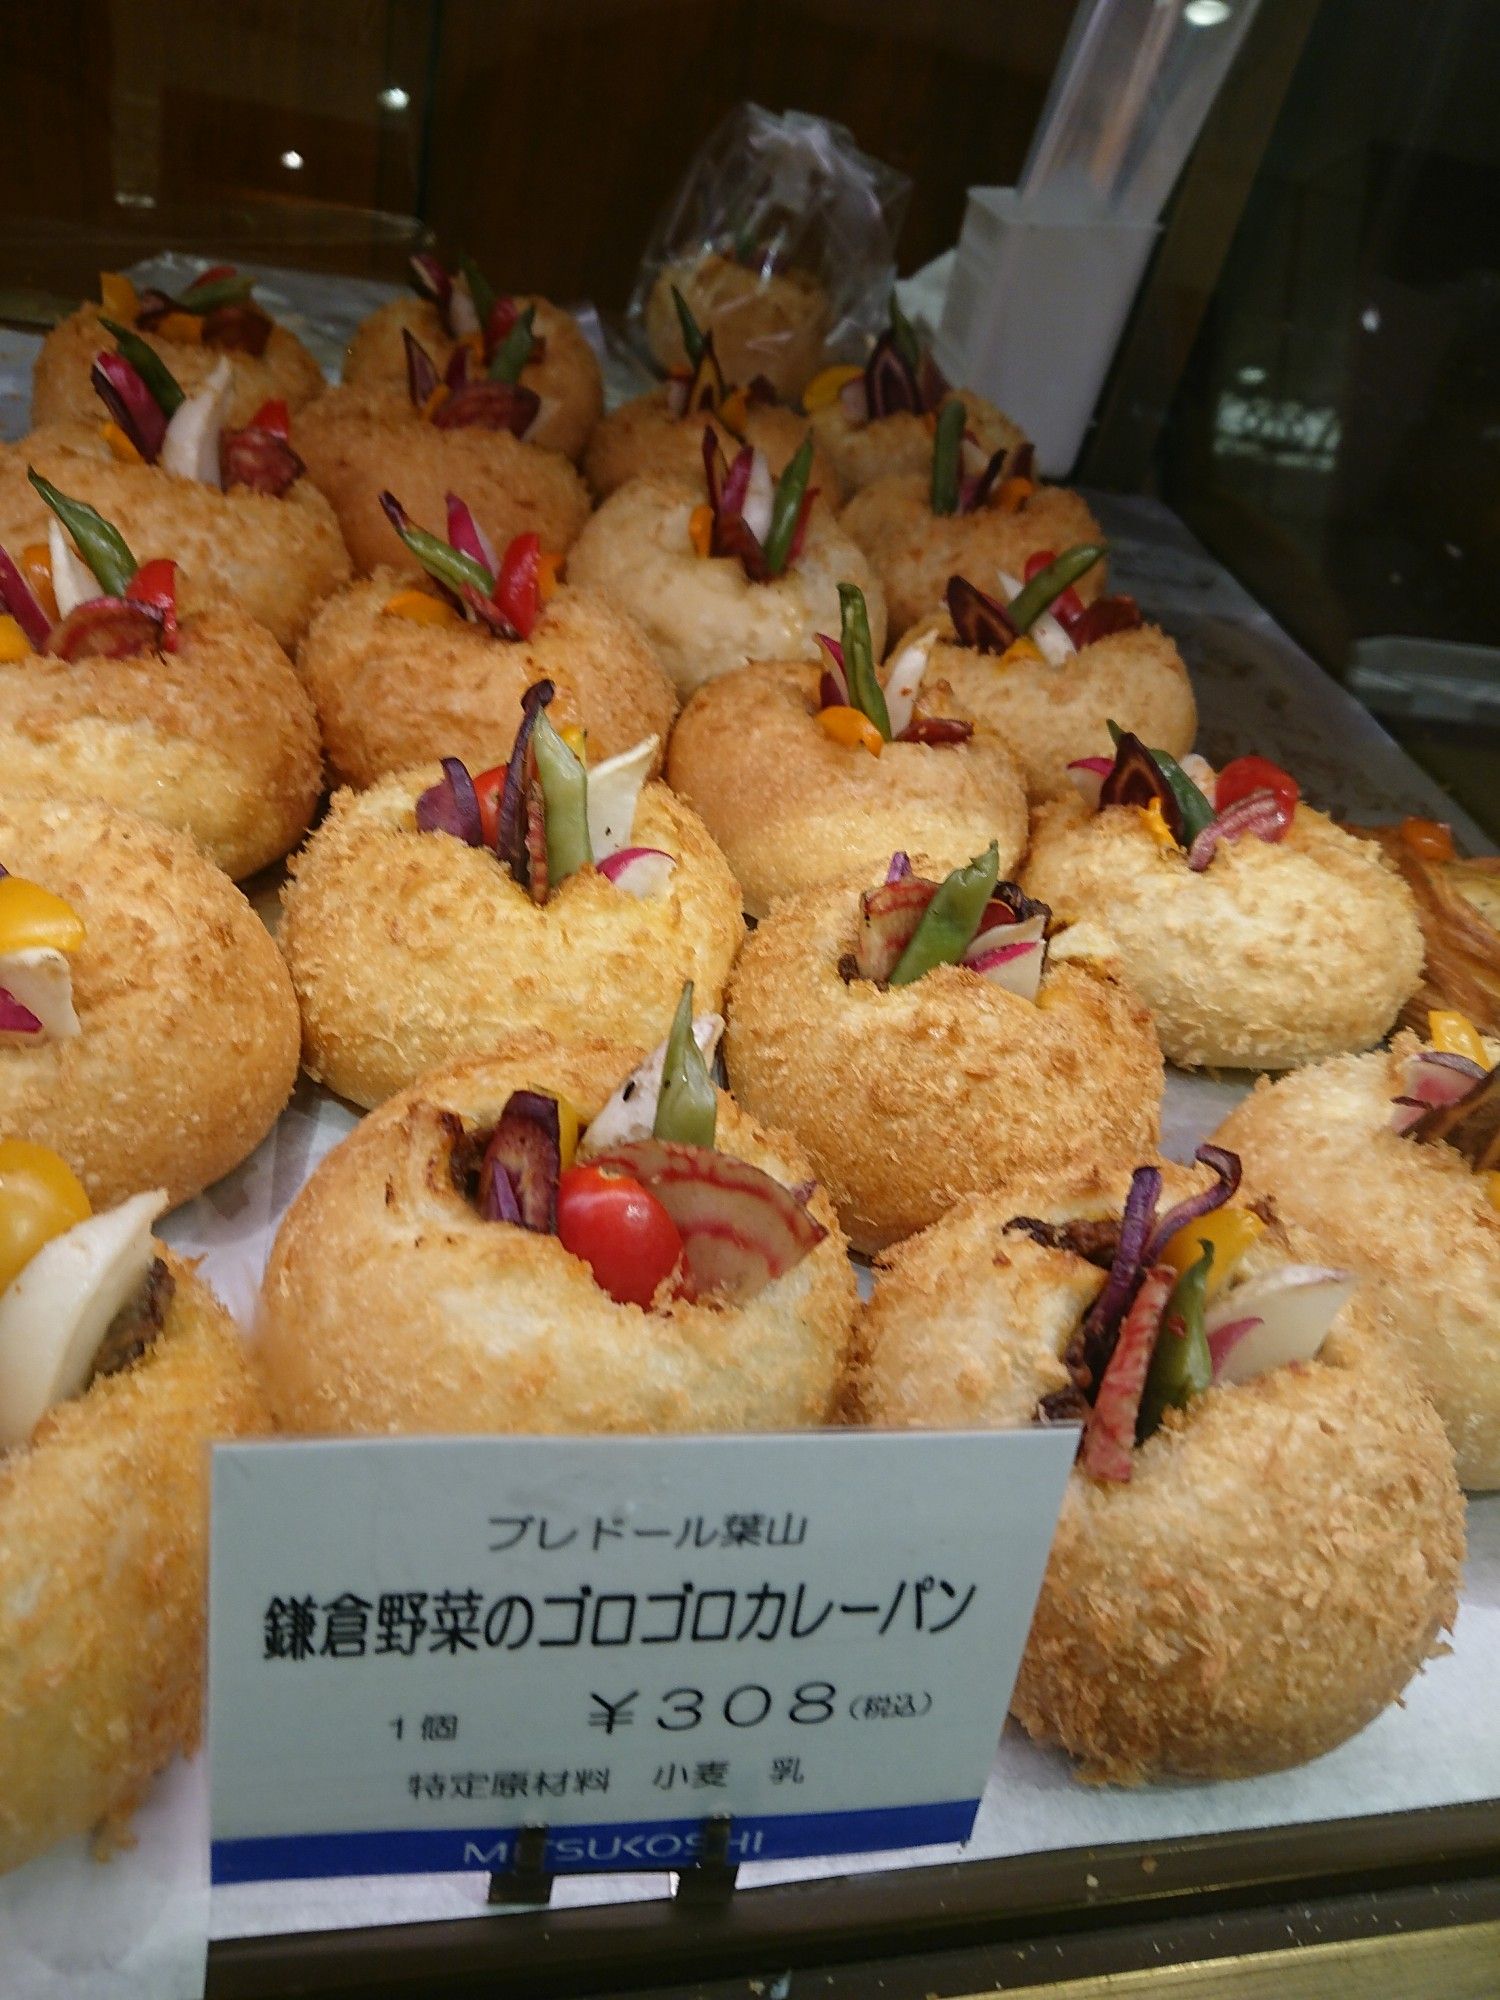 ブレドール葉山の鎌倉野菜ゴロゴロカレーパンが美味しすぎ 1 のブログ 楽天ブログ